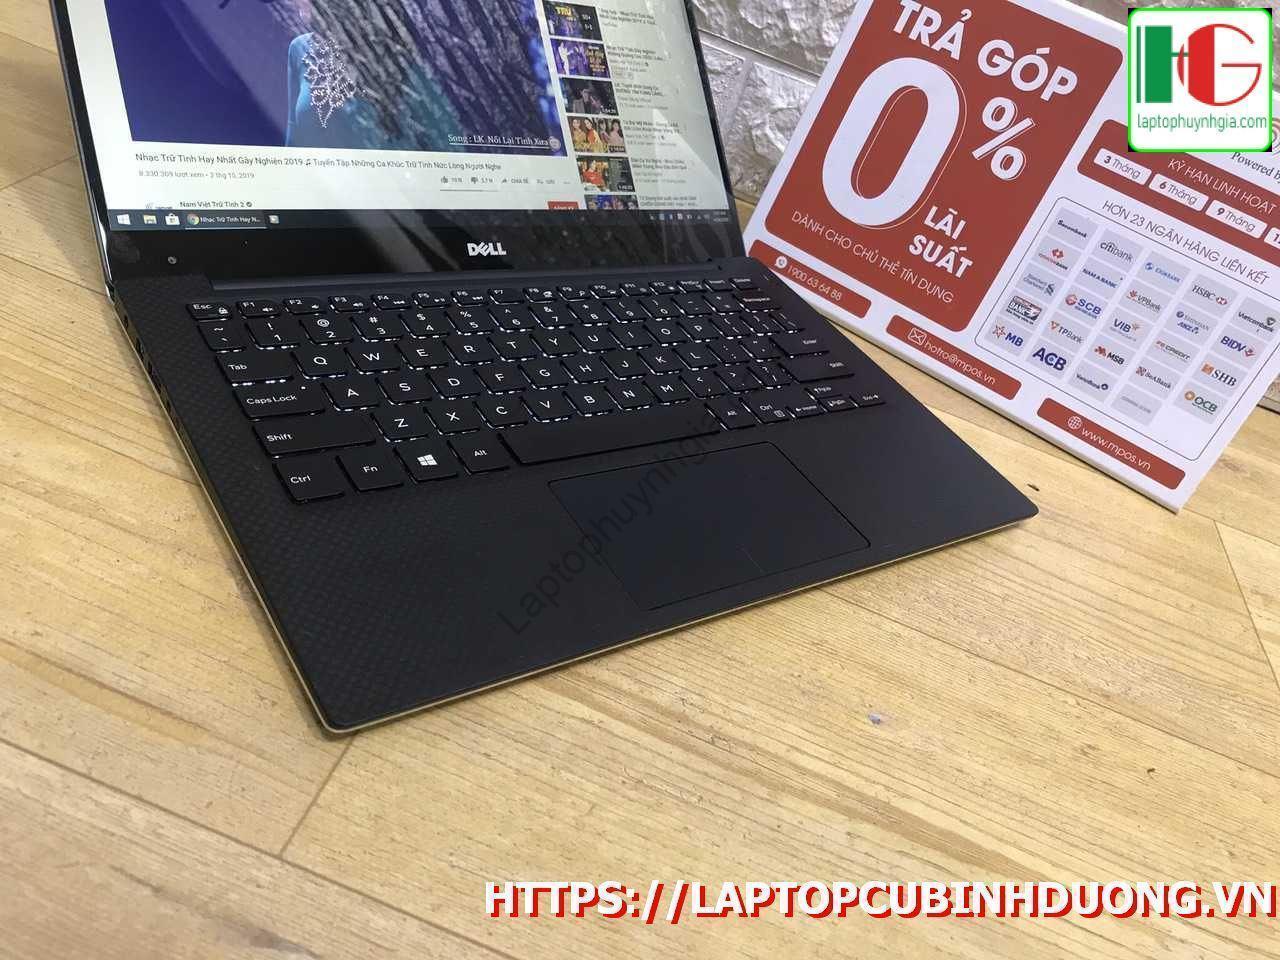 Laptop Dell Xps 9343 I7 5500u 8g M2 256g Lcd 13 Laptopcubinhduong.vn 4 [kích Thước Gốc] Result